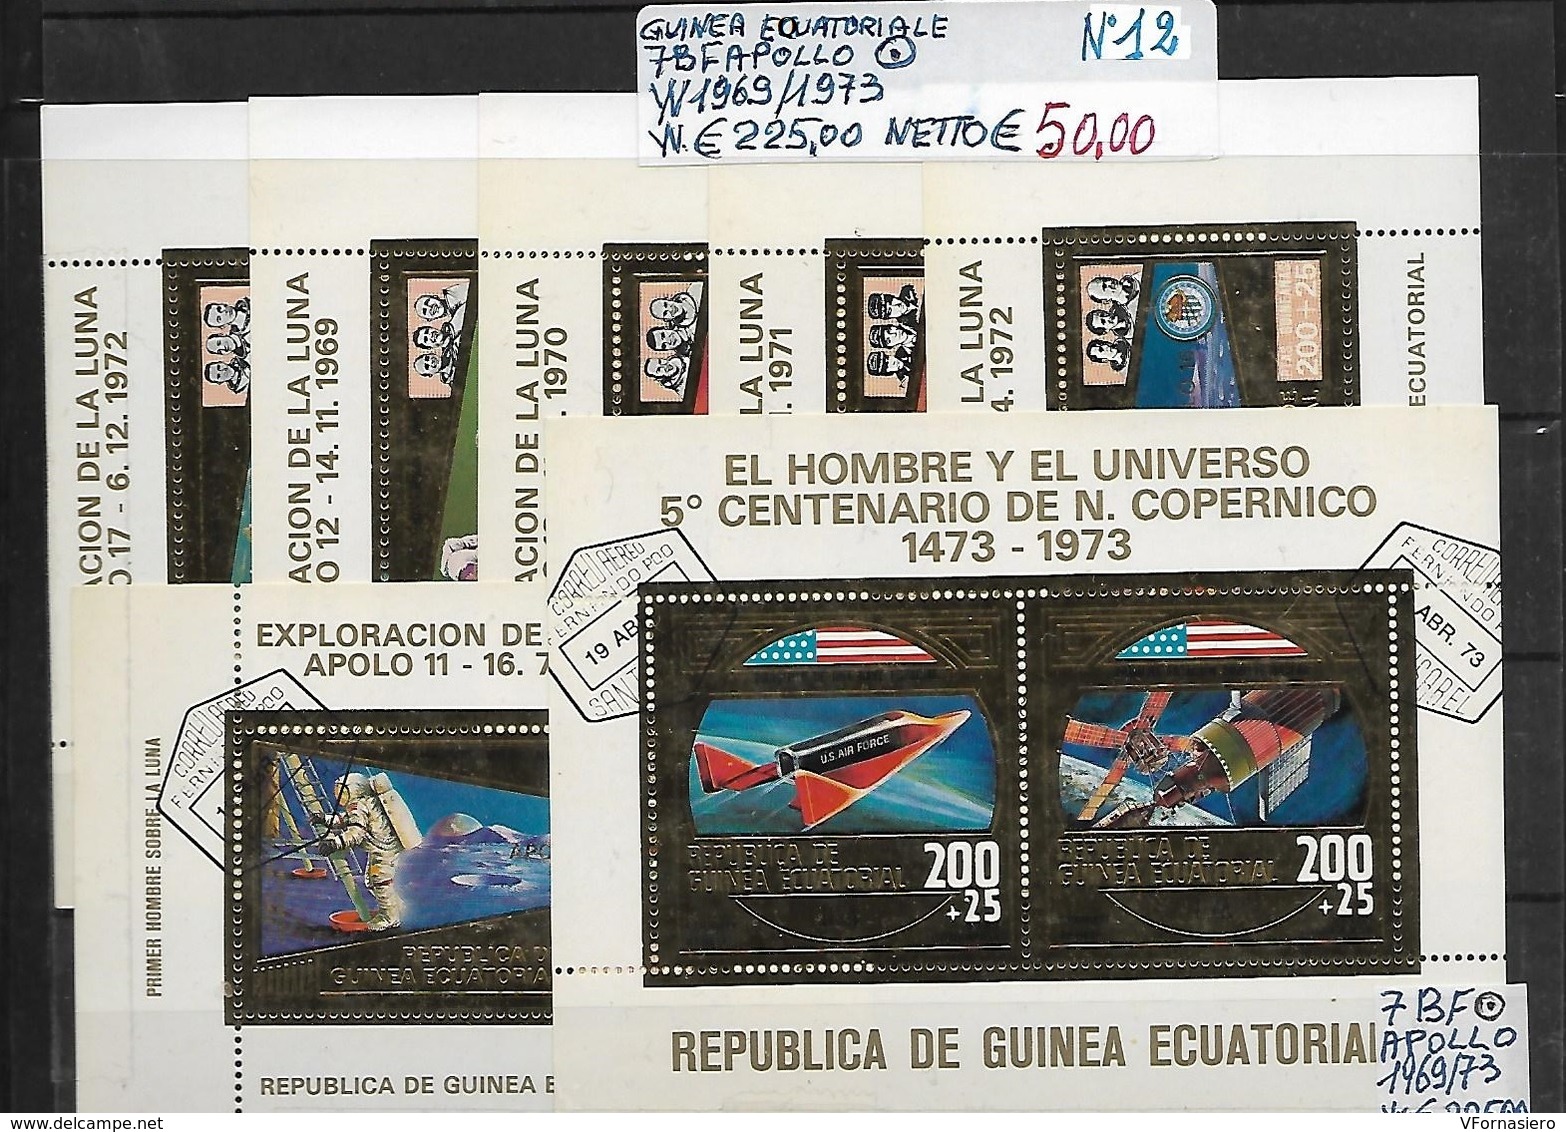 GUINEA EQUATORIALE O 1969/1973 - SPAZIO, 7 BF - Afrika